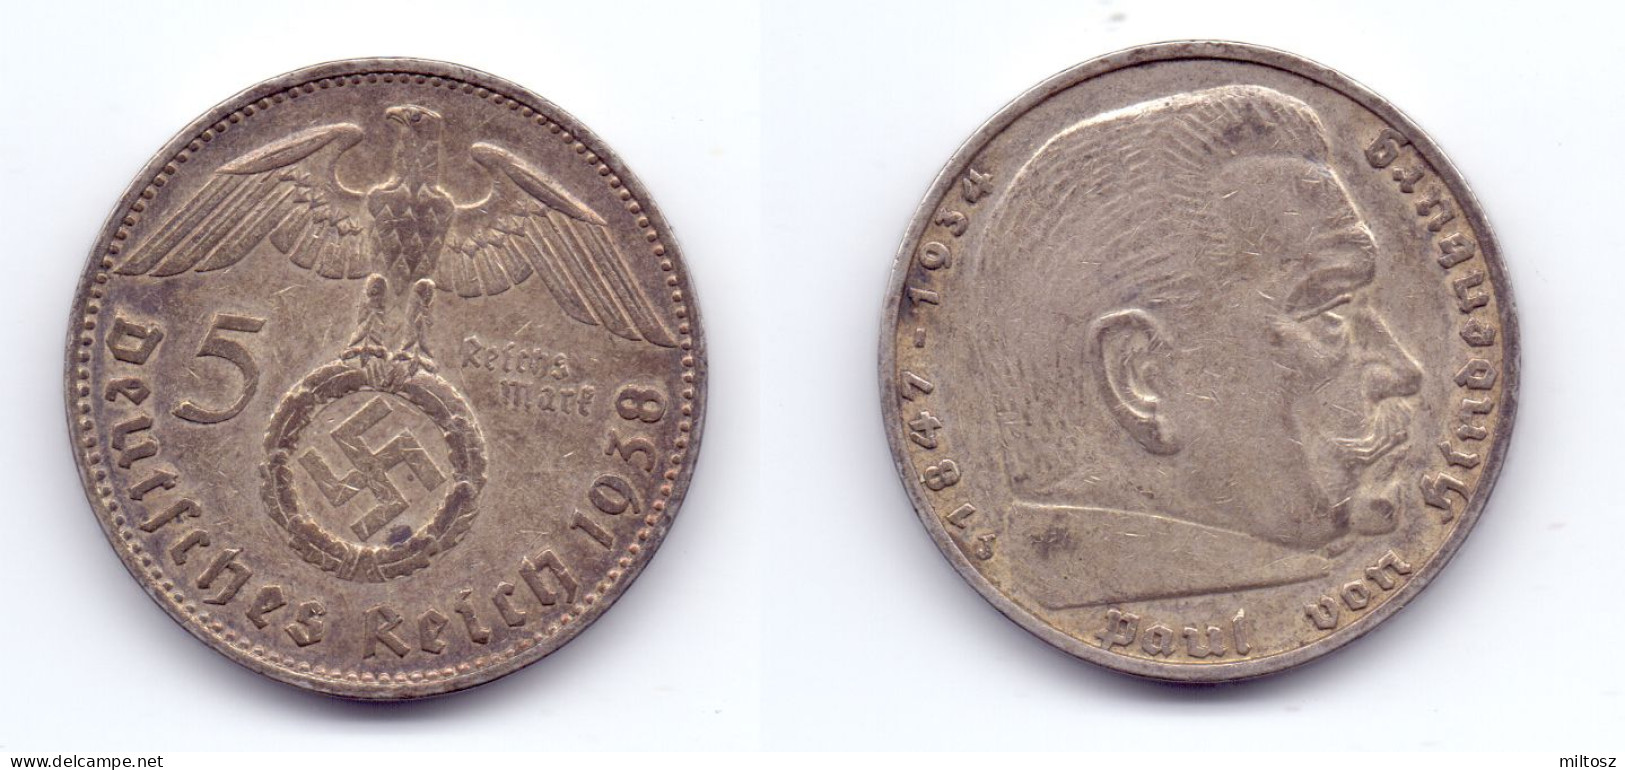 Germany 5 Reichsmark 1938 J WWII Issue - 5 Reichsmark